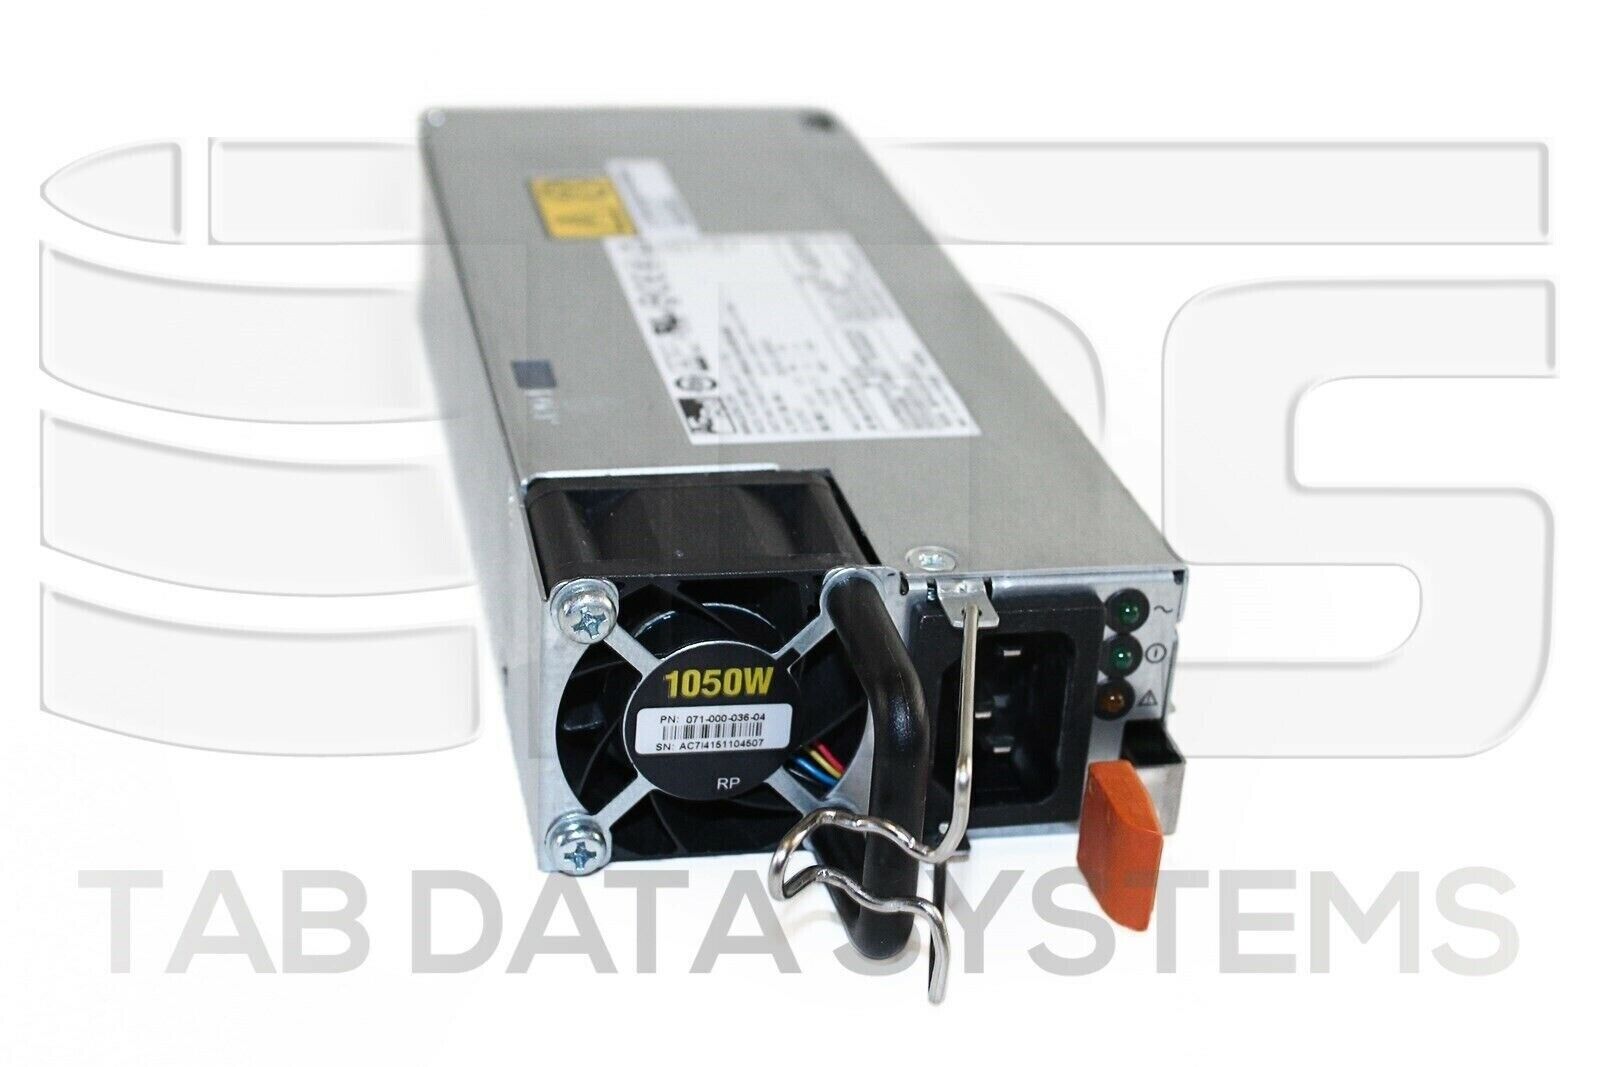 EMC 071-000-036-04 1050W 1100W 120/240V PSU Power Supply for VNX2 071-000-036